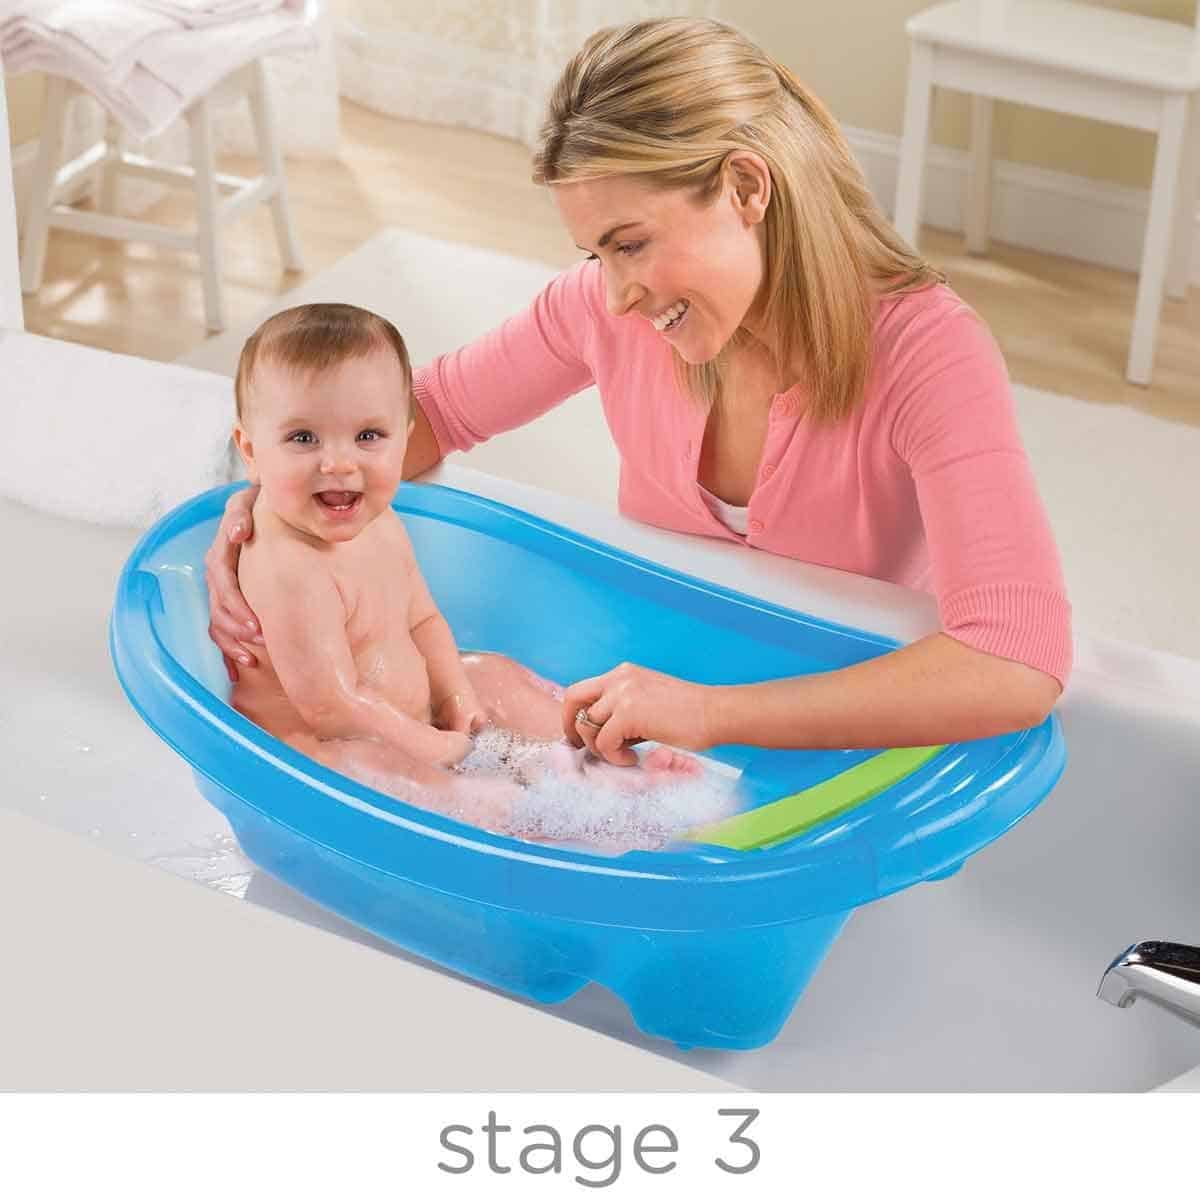 Enjuagador  Enjuague a su bebé en la bañera - Twistshake